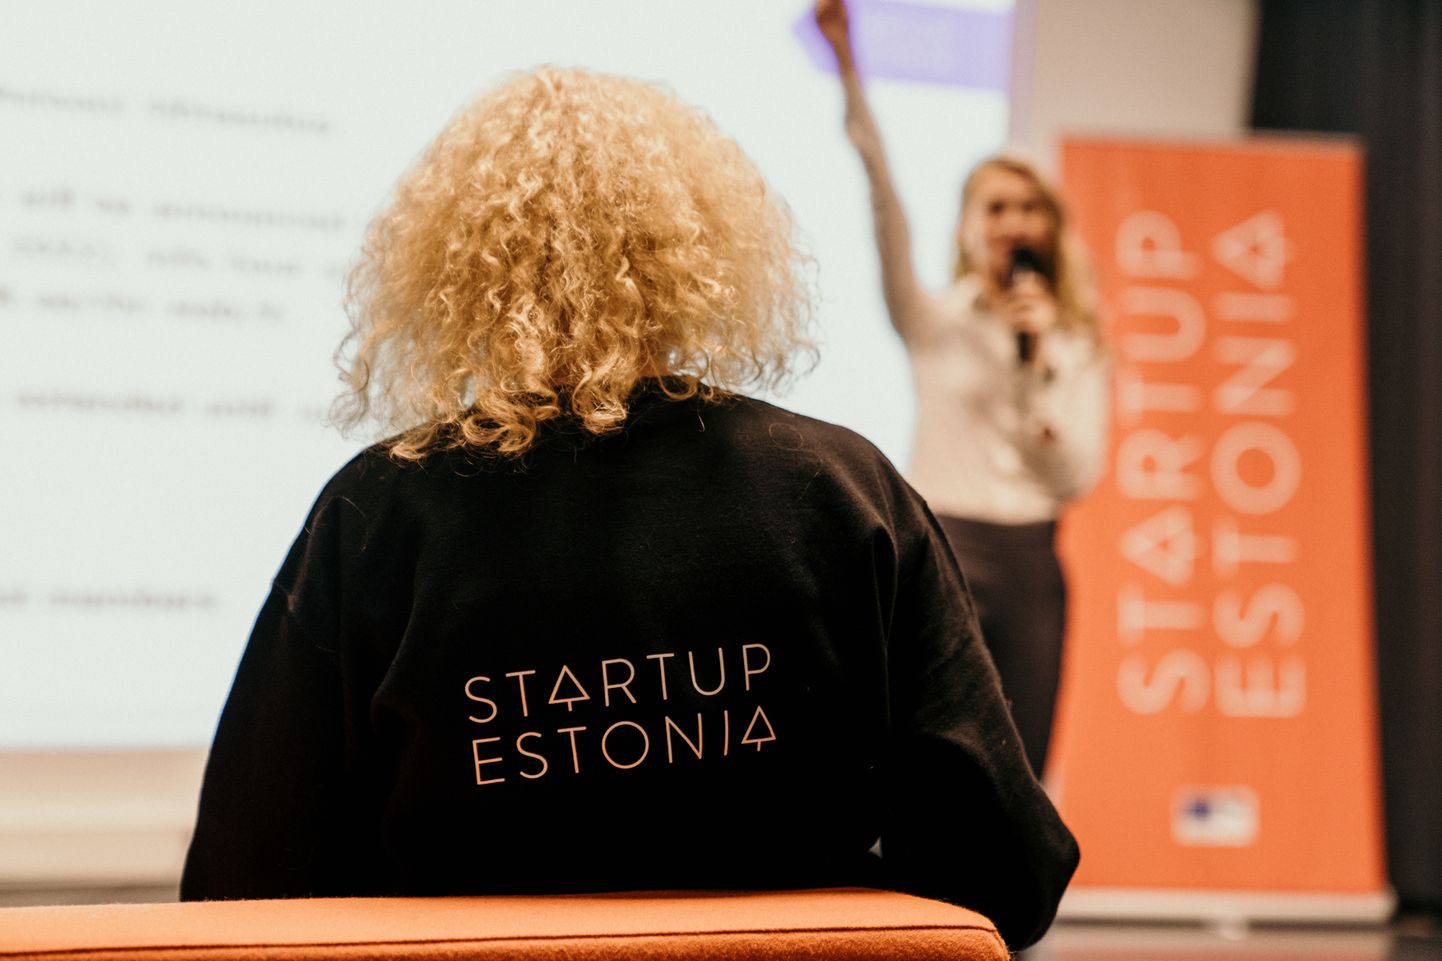 Программа "Startup Estonia".